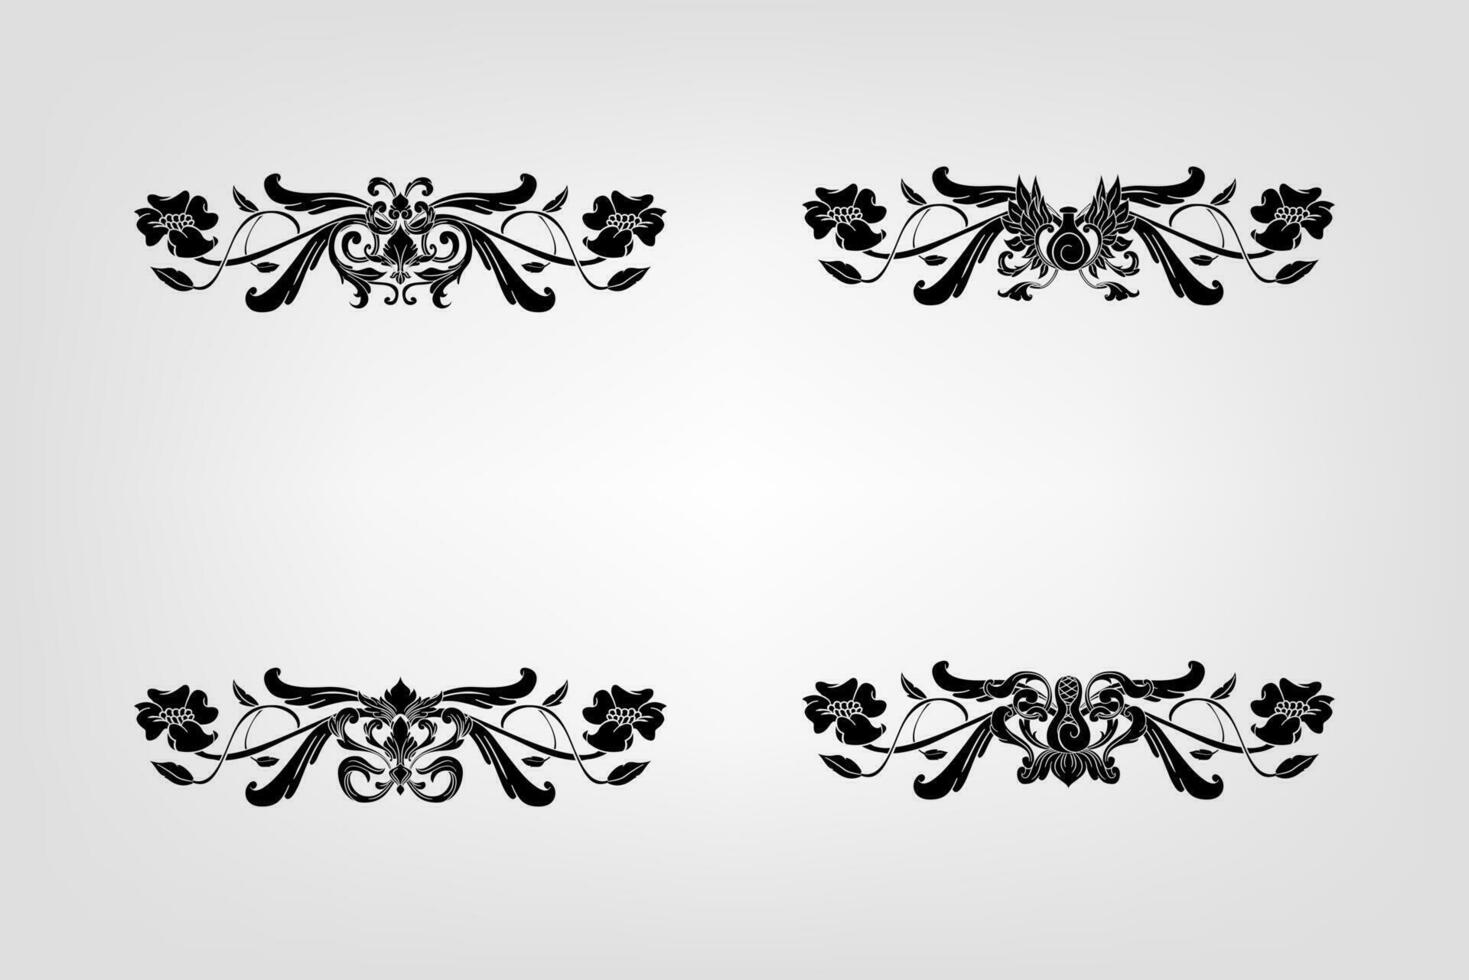 clásico barroco filigrana decoración ornamento Clásico floral frontera estilo antiguo Arte retro vector